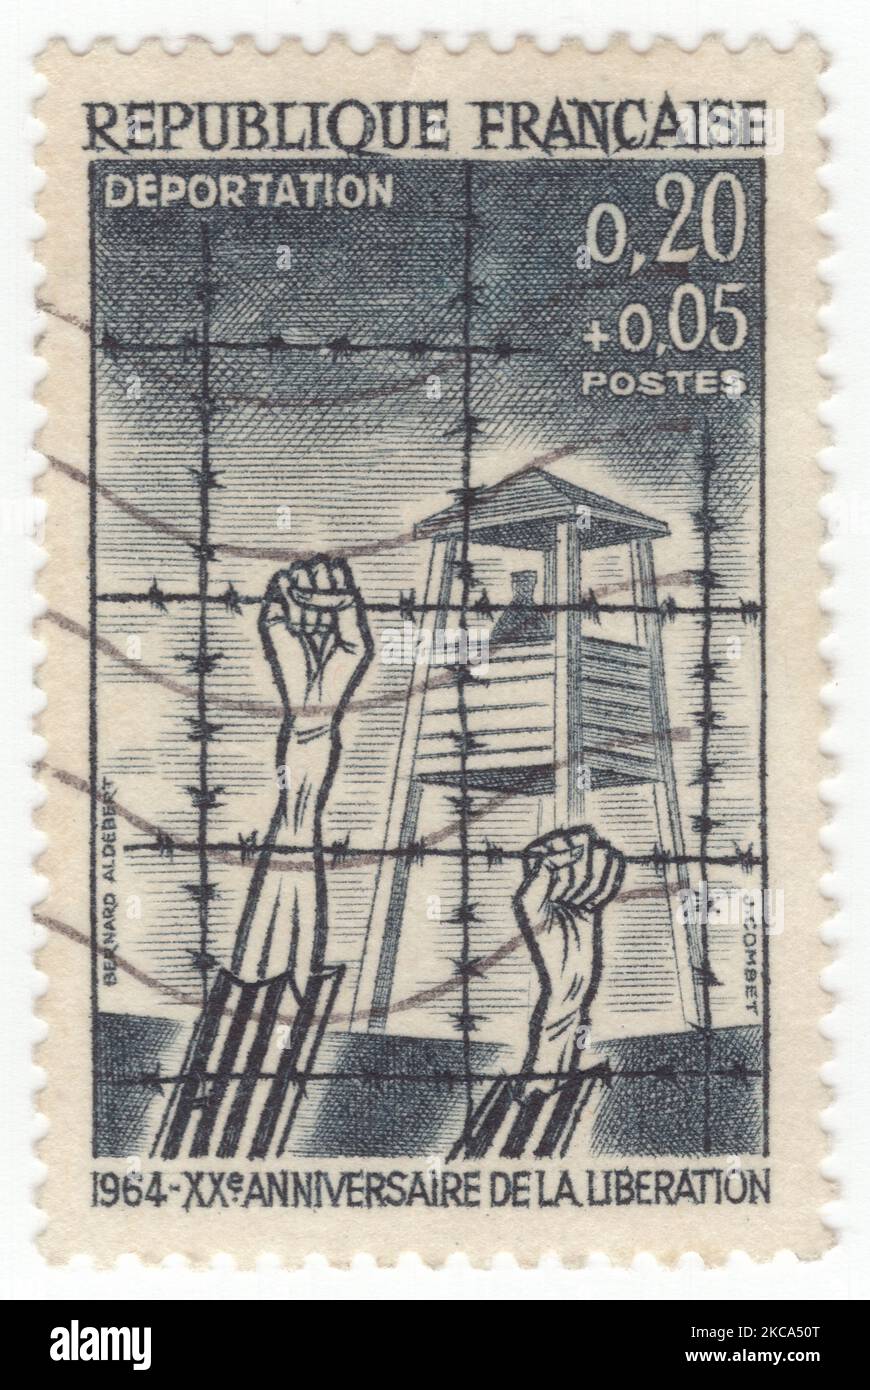 FRANCIA - 1964 marzo 21: Un francobollo semi-postale nero ardesia da 20 centesimi più 5 centesimi raffigurante la “deportazione”, campo di concentramento con torre di guardia e filo spinato. 20th° anniversario della liberazione dai nazisti Foto Stock